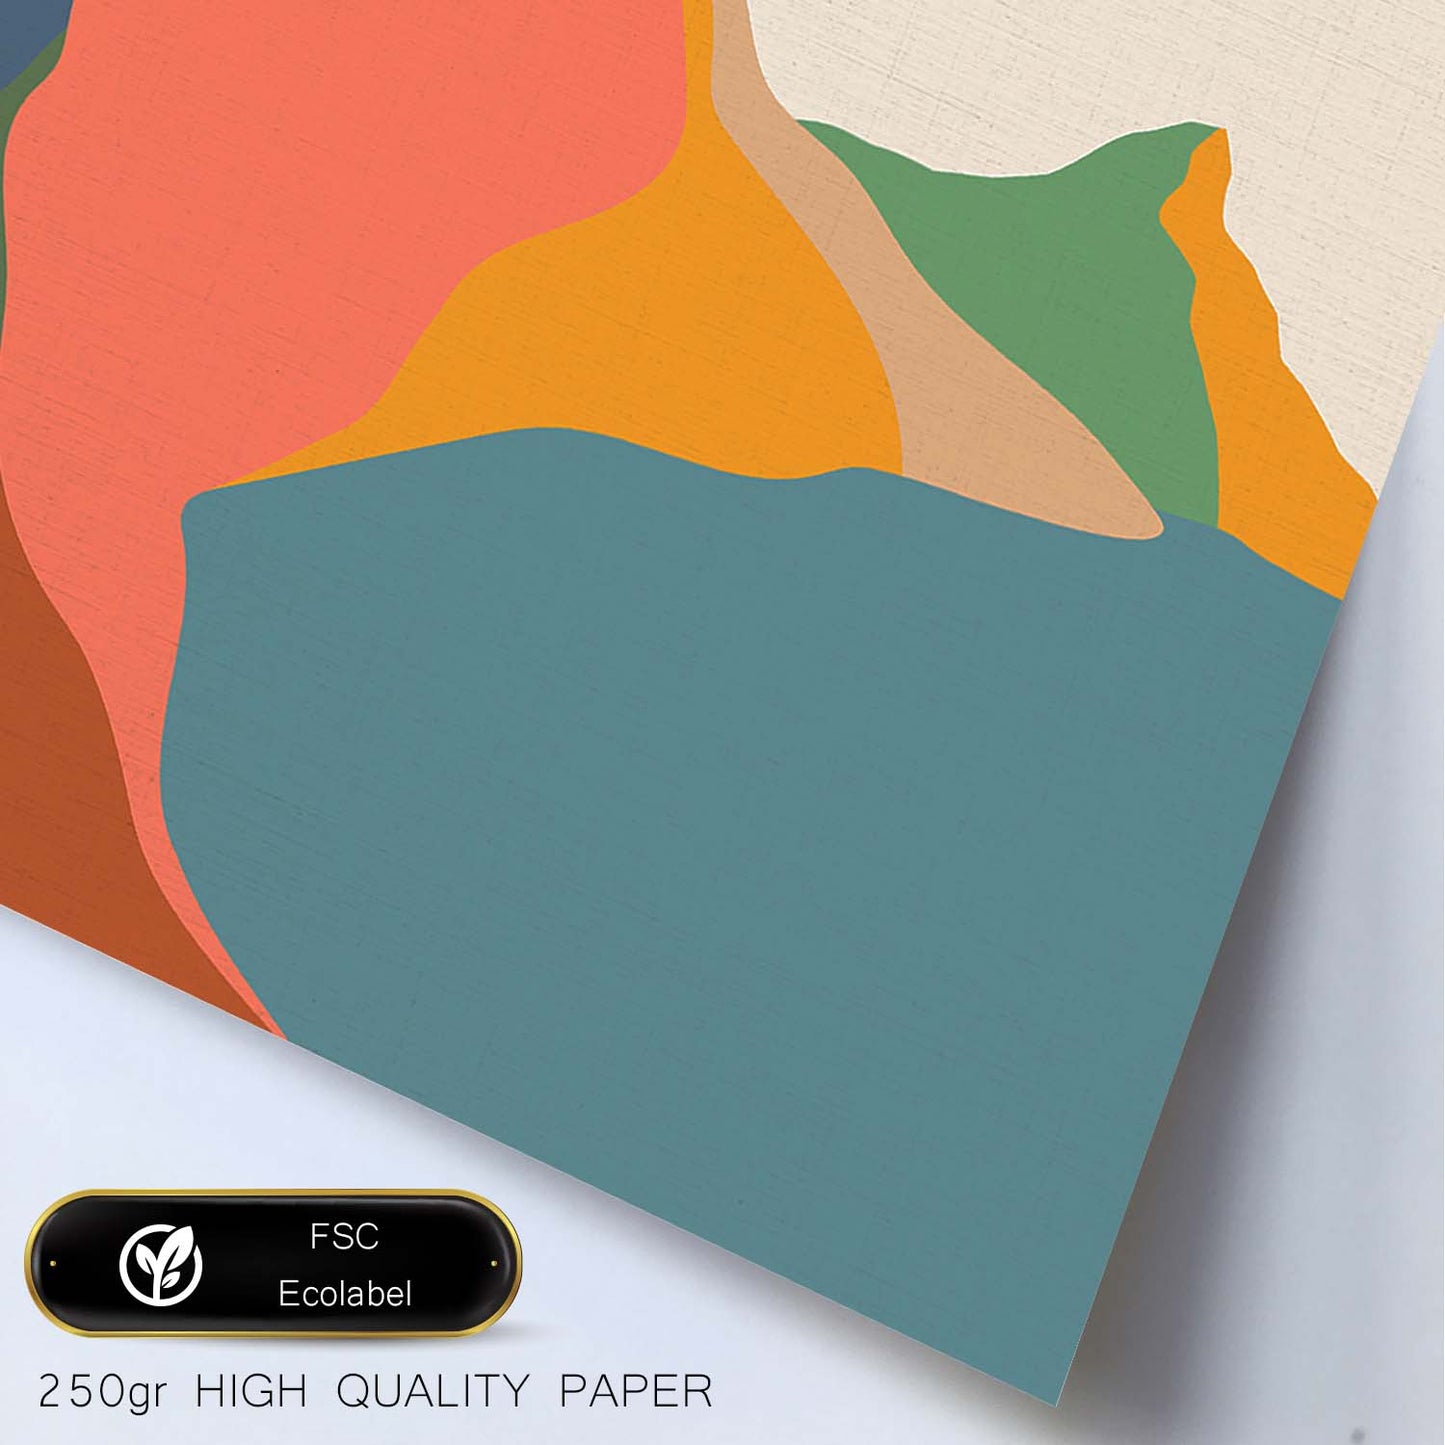 Posters con dibujos de montañas a color. Lámina de decoración 'Lago Y Sol' colorida-Artwork-Nacnic-Nacnic Estudio SL